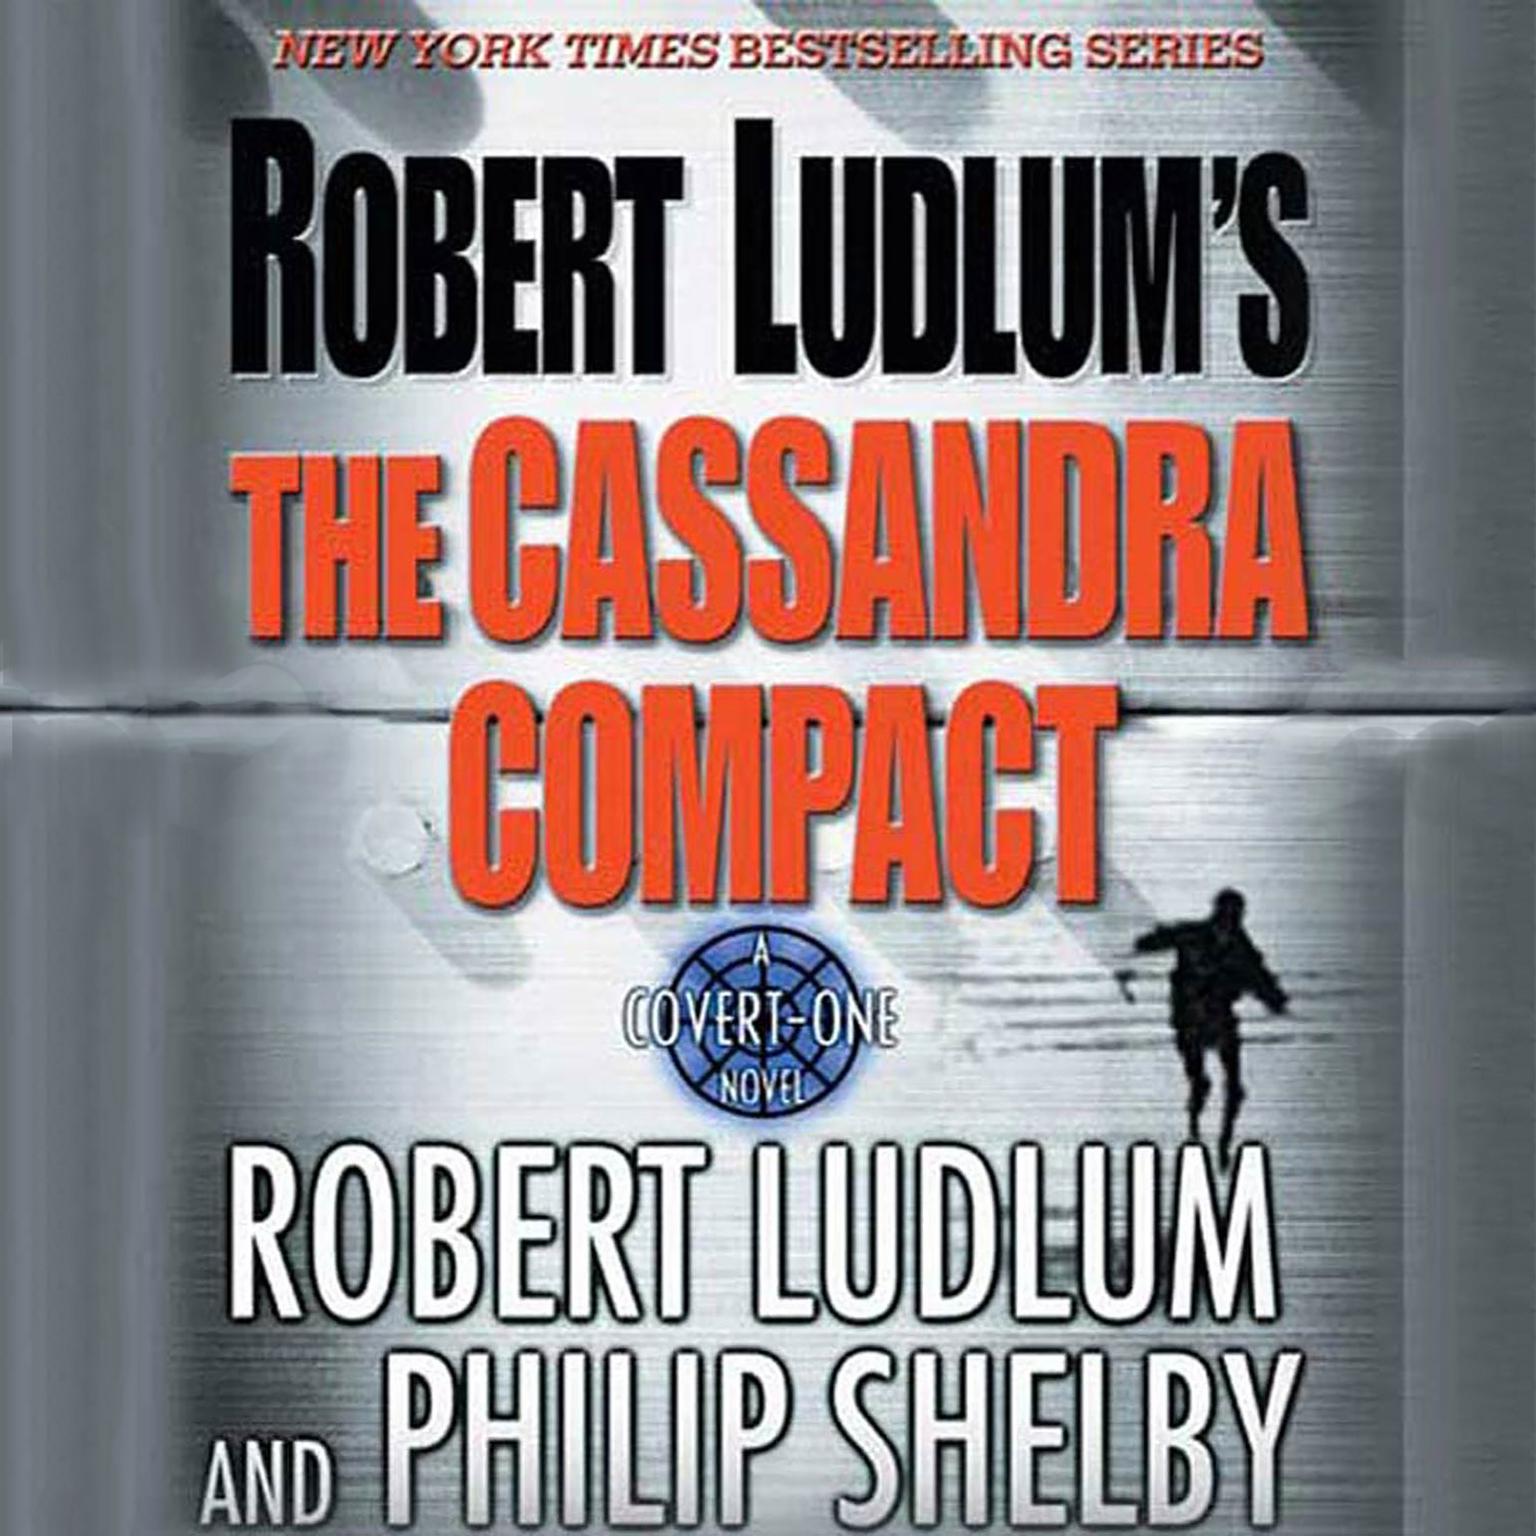 Robert Ludlums The Cassandra Compact (Abridged): A Covert-One Novel Audiobook, by Robert Ludlum